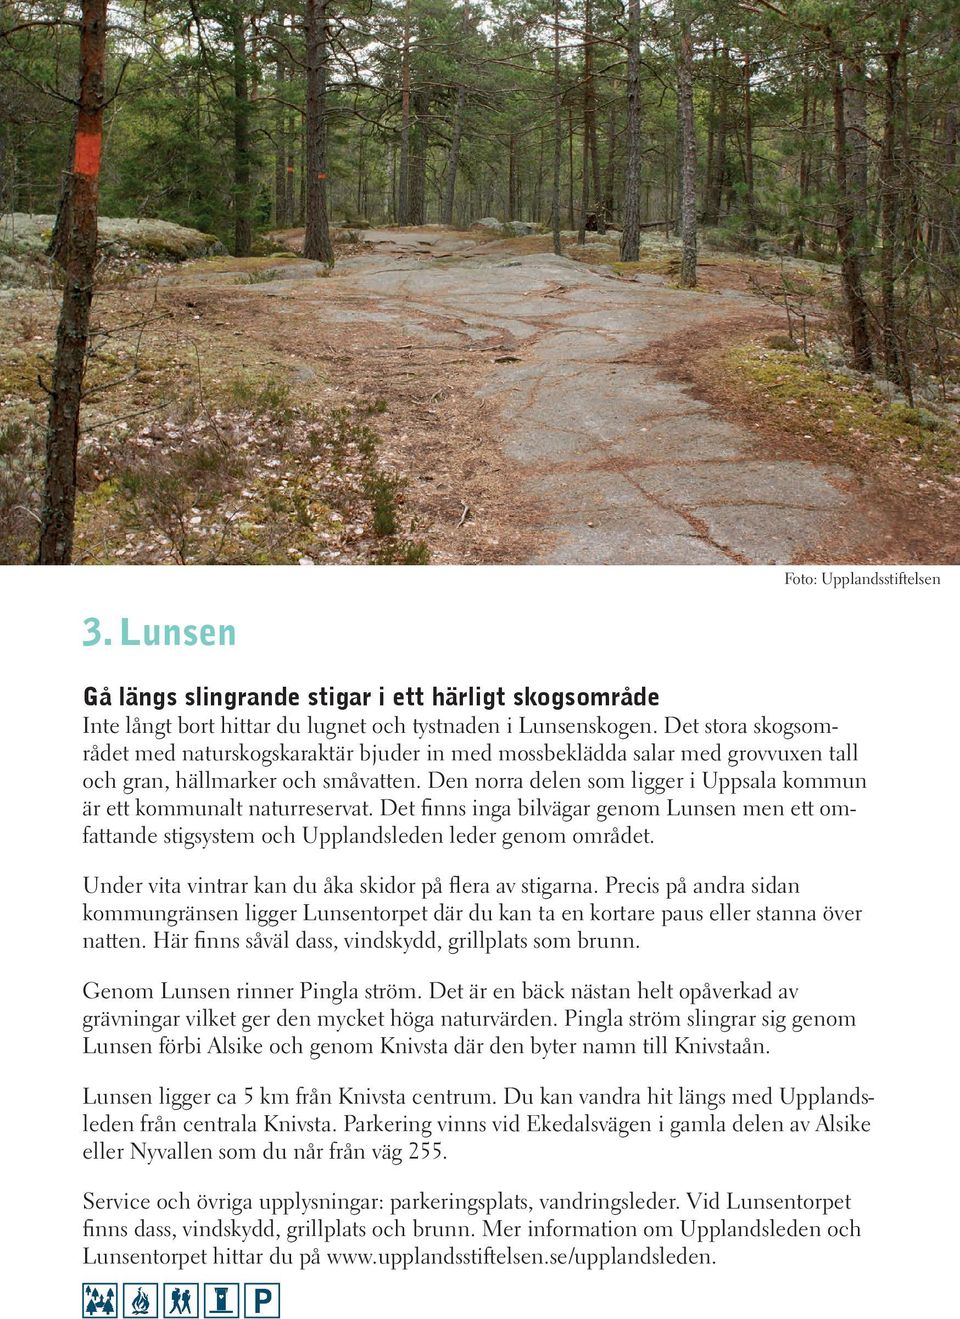 Den norra delen som ligger i Uppsala kommun är ett kommunalt naturreservat. Det finns inga bilvägar genom Lunsen men ett omfattande stigsystem och Upplandsleden leder genom området.